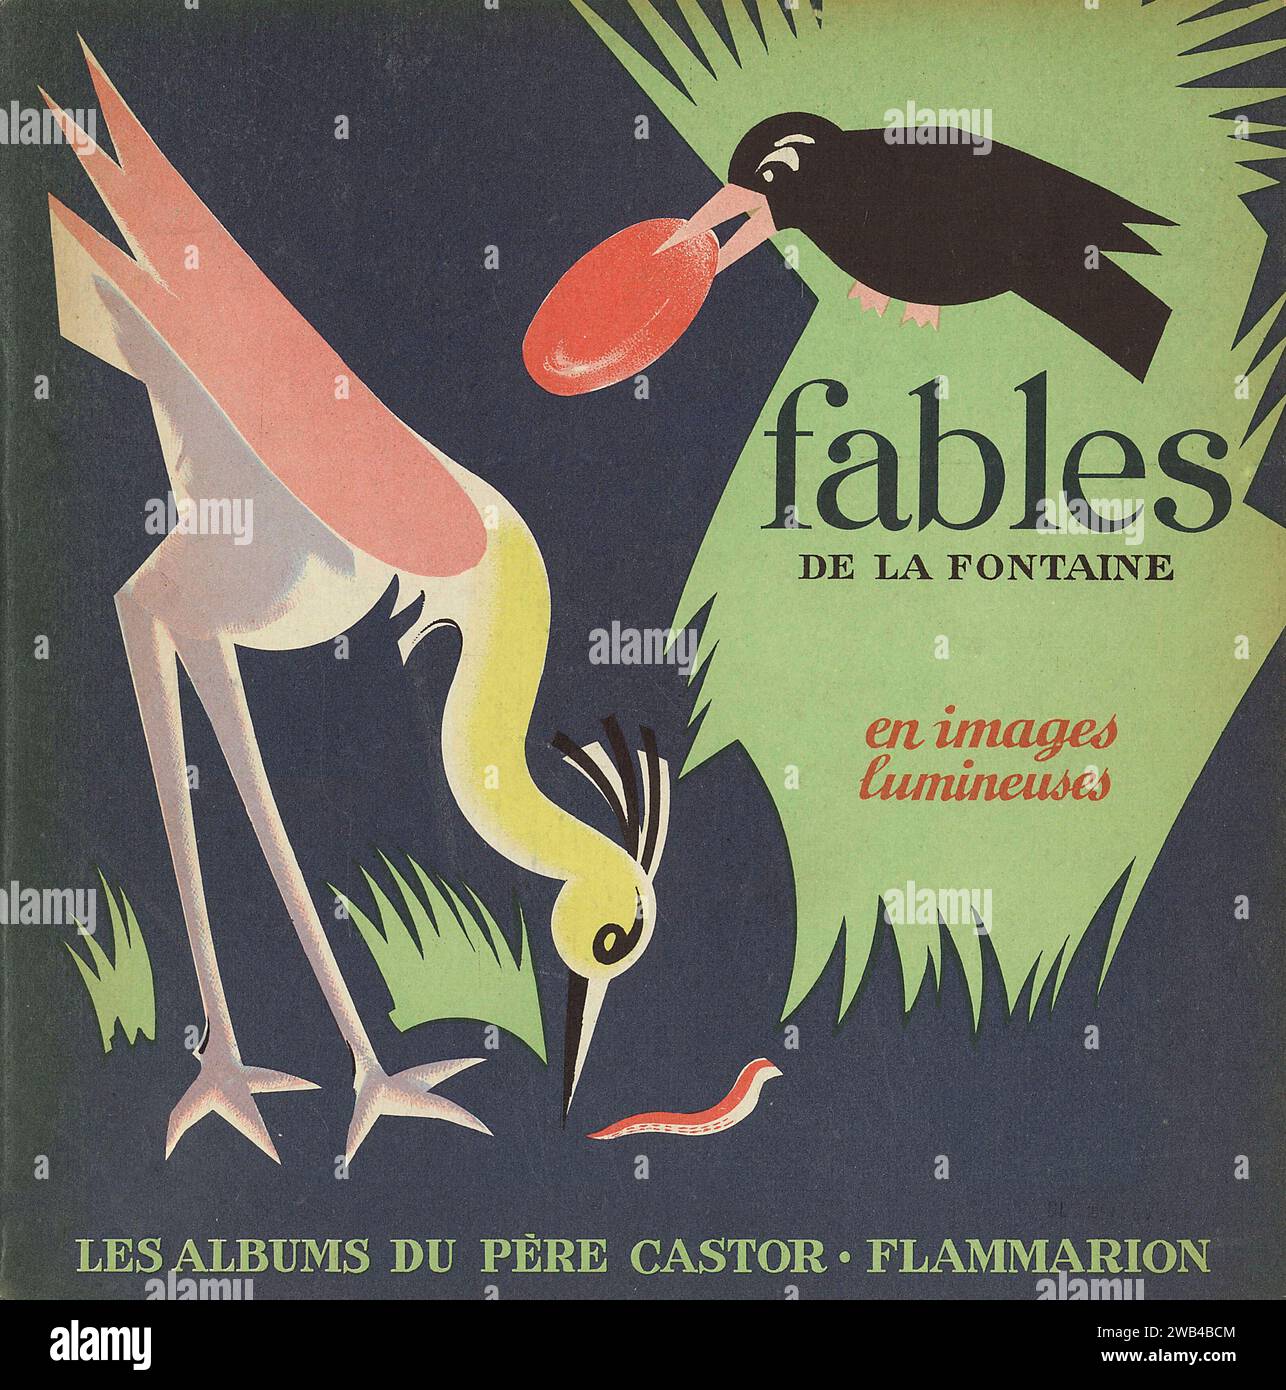 Illustrazione di copertina di Pierre Belvès pubblicata nel libro "Fables de la Fontaine en images lumineuses" di Gallimard, nella collezione "Les Albums du Père Castor". 1950. Foto Stock